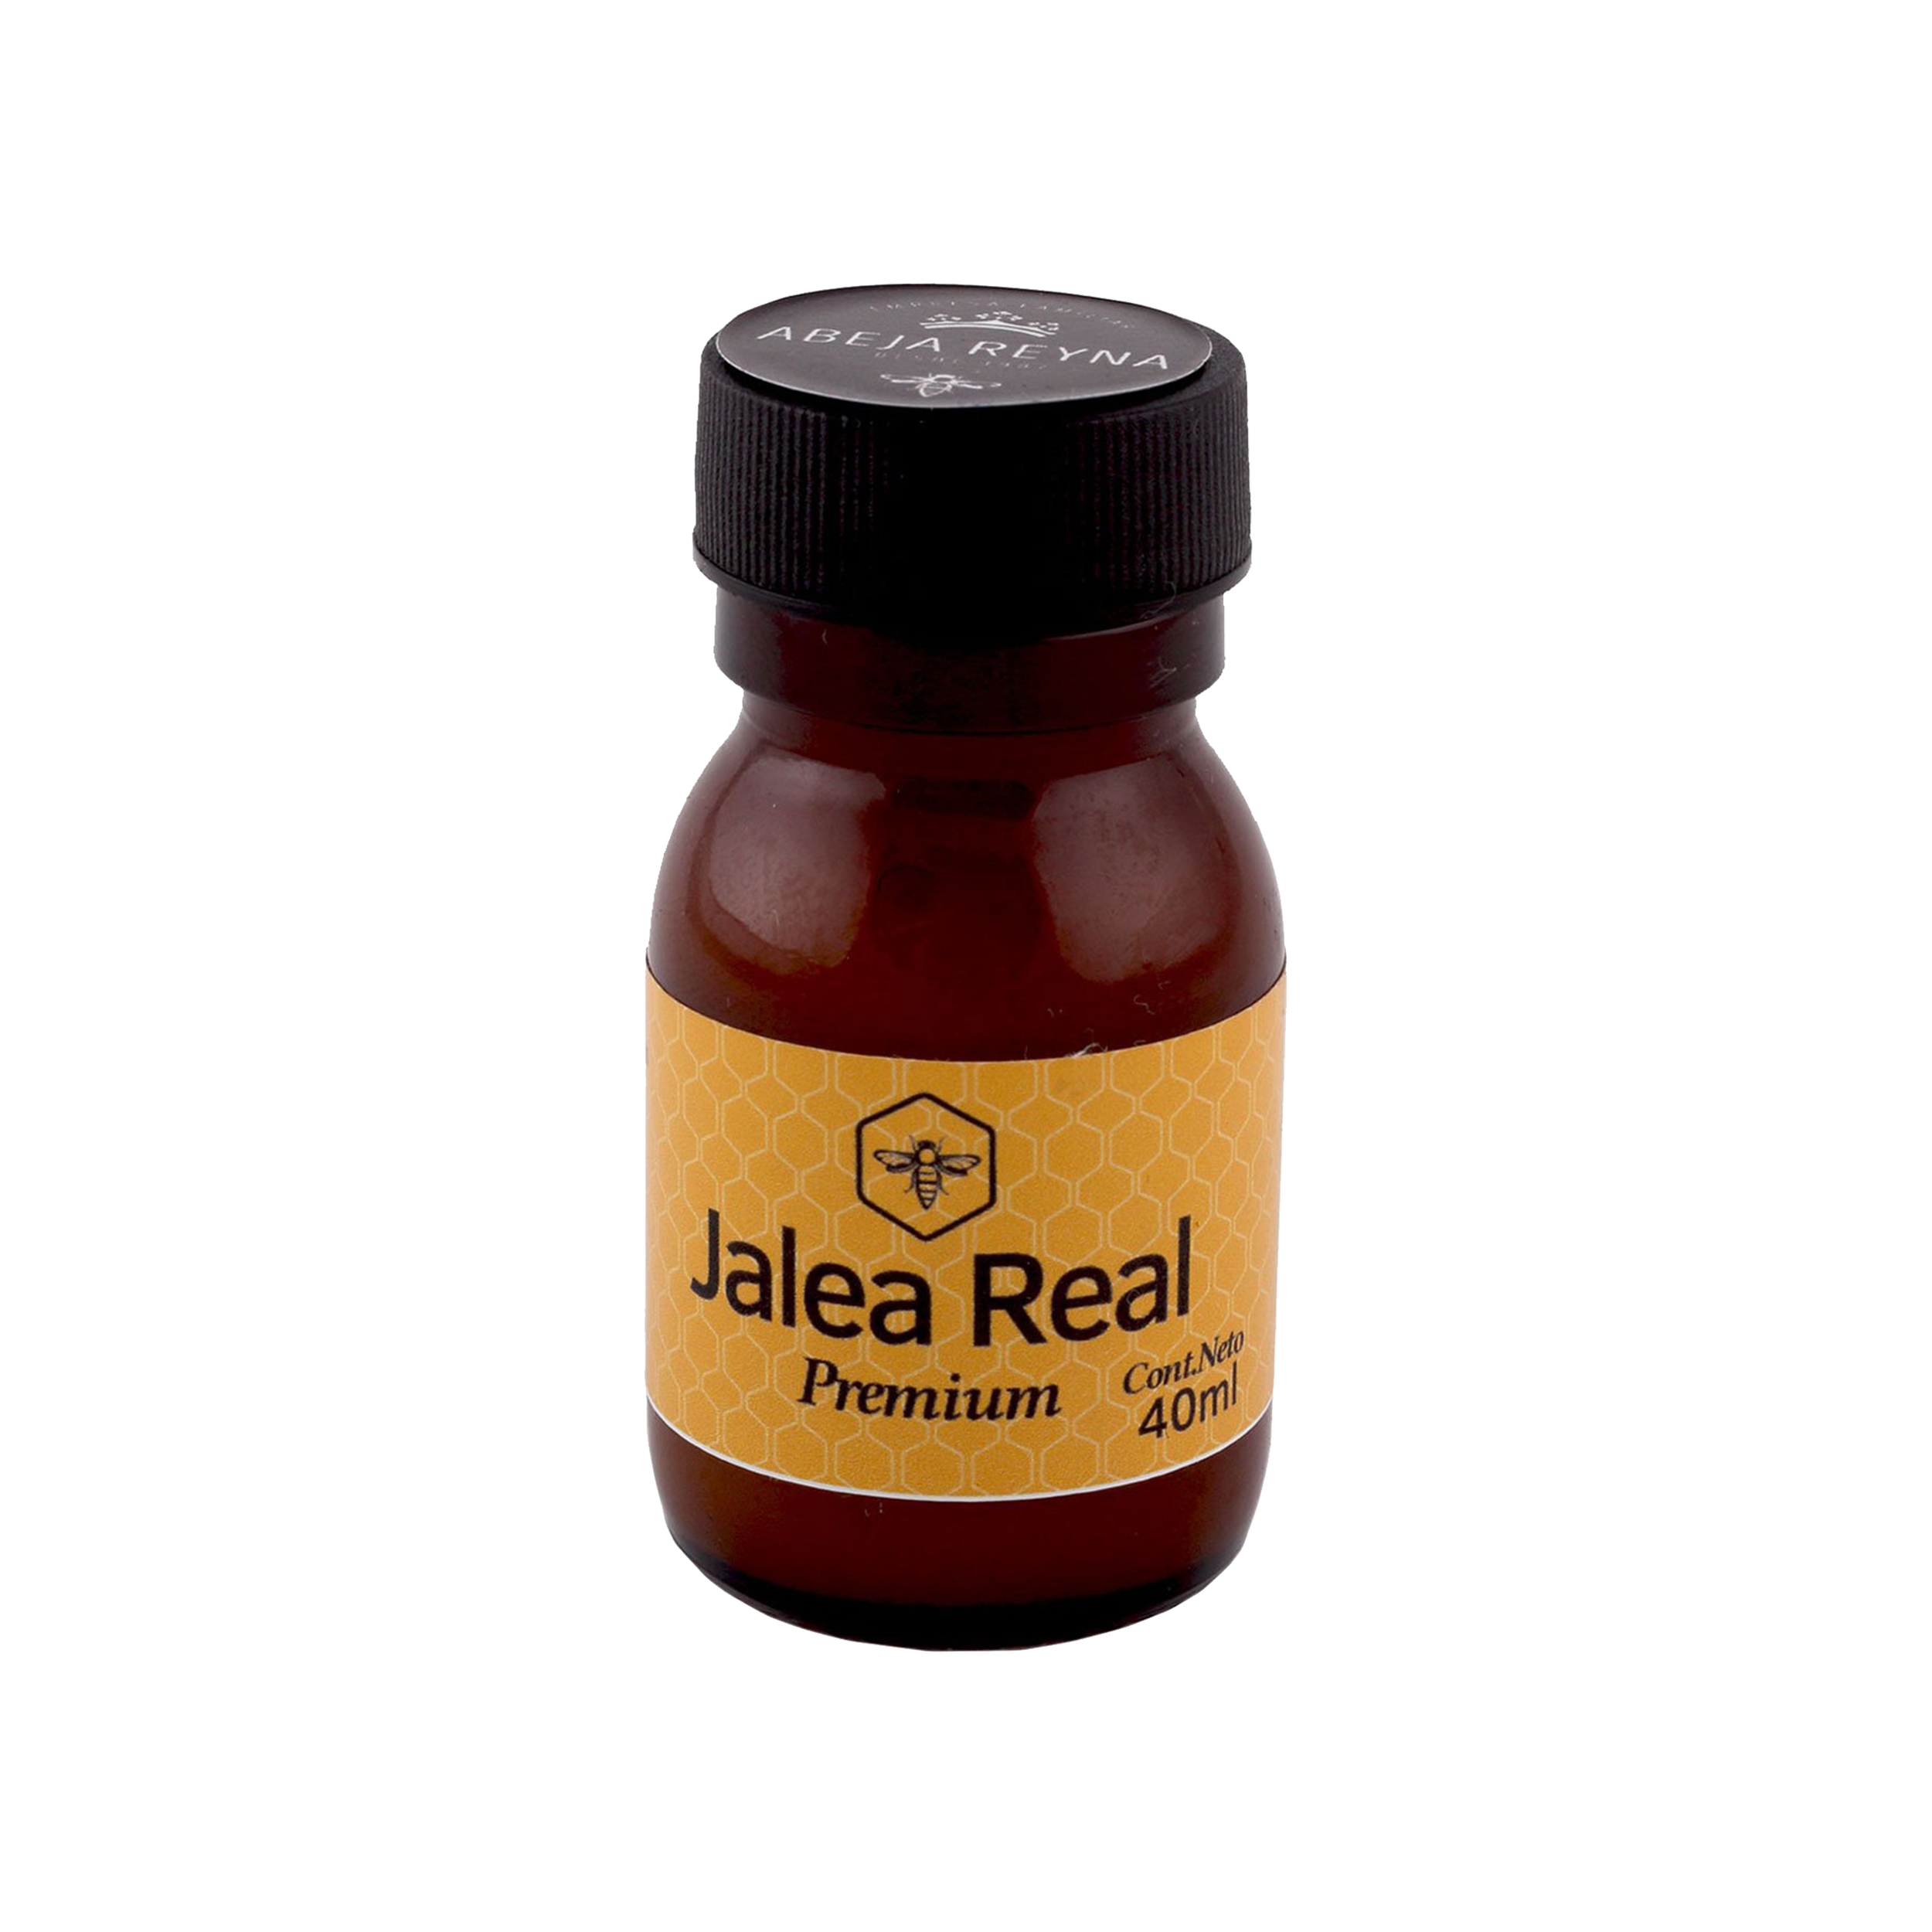 Abeja Reyna- Jalea real premium